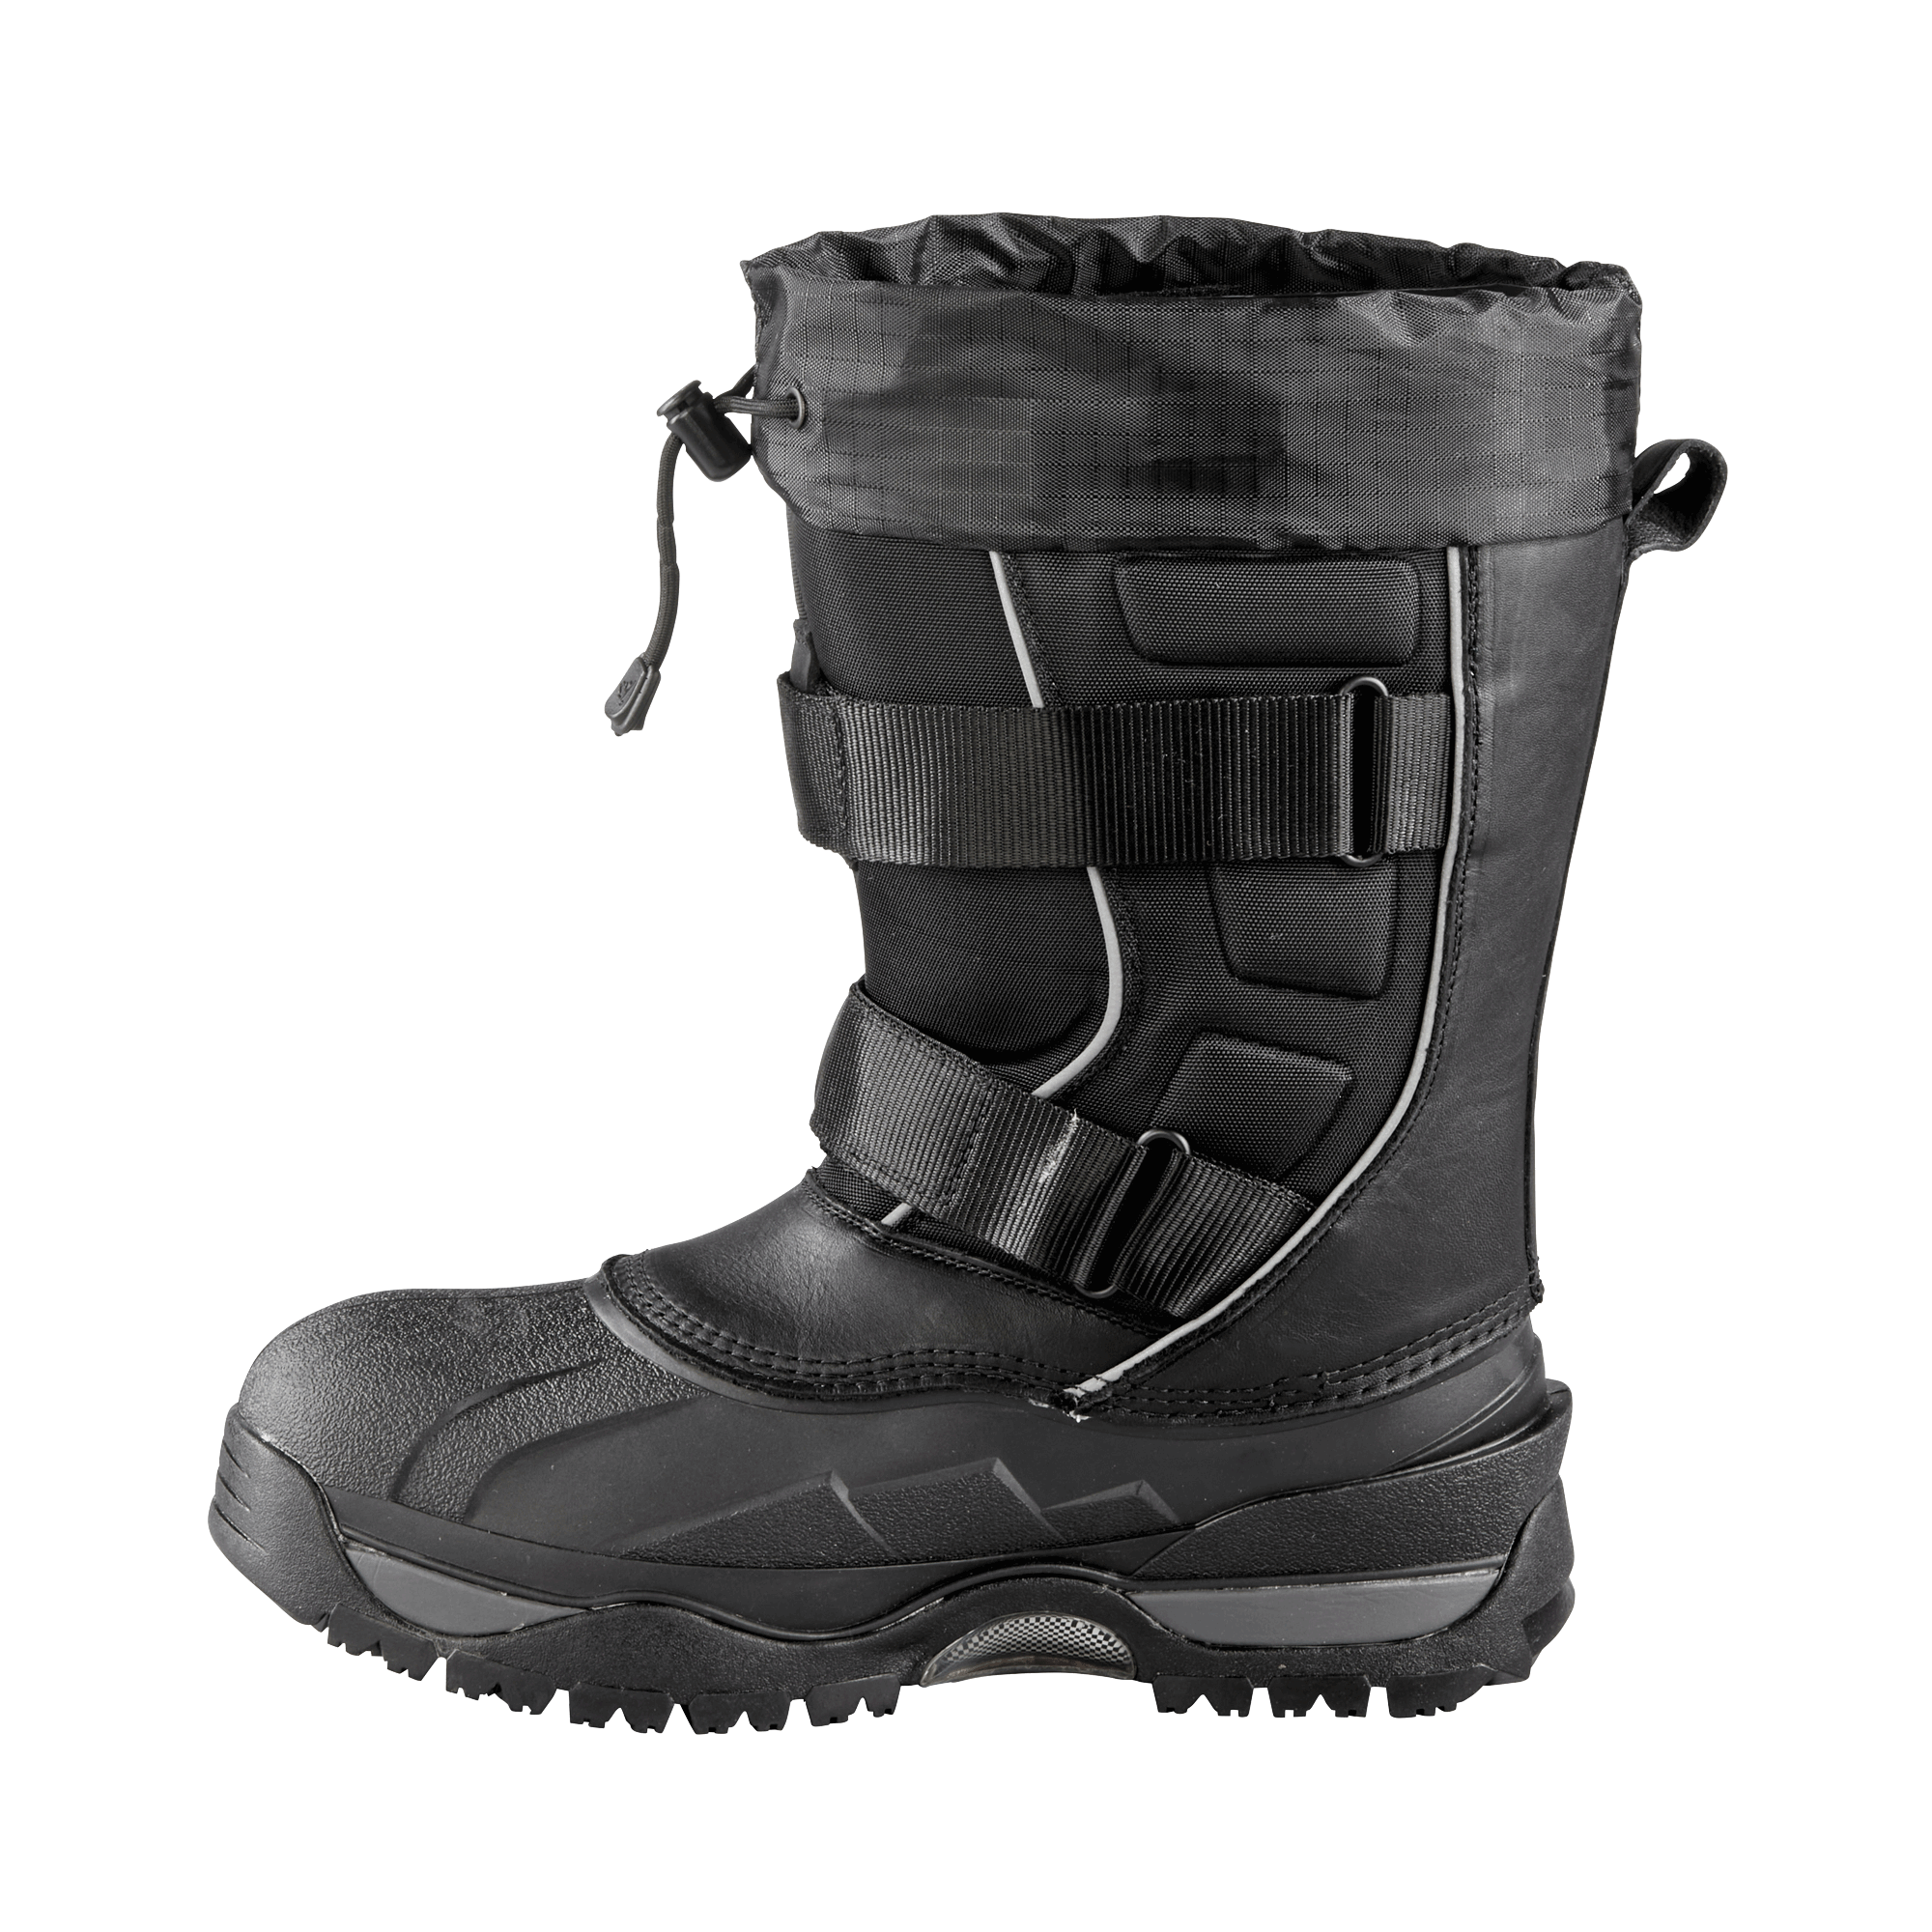 EIGER | Men's Boot